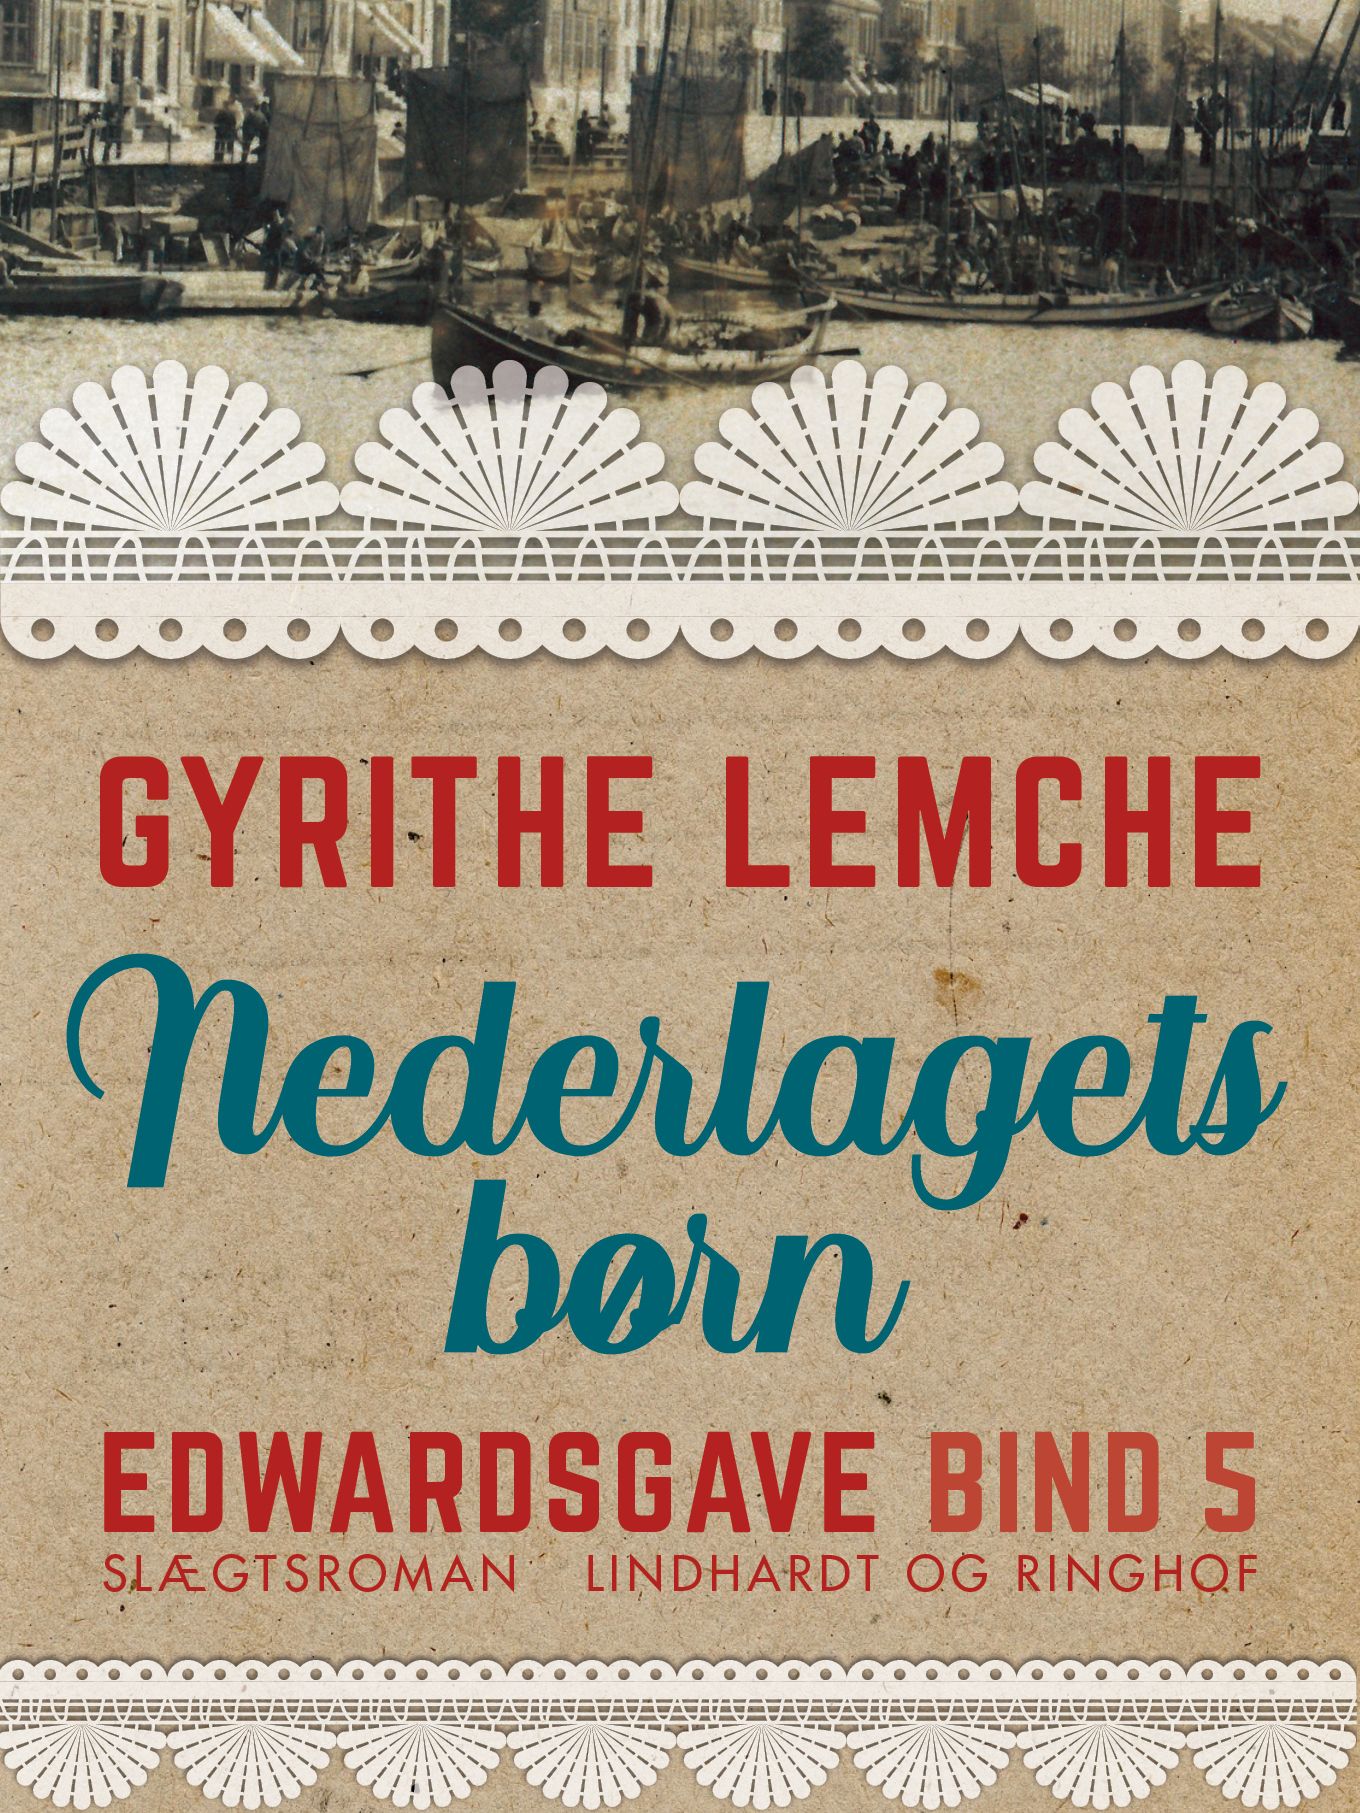 Edwardsgave - Nederlagets børn, eBook by Gyrithe Lemche